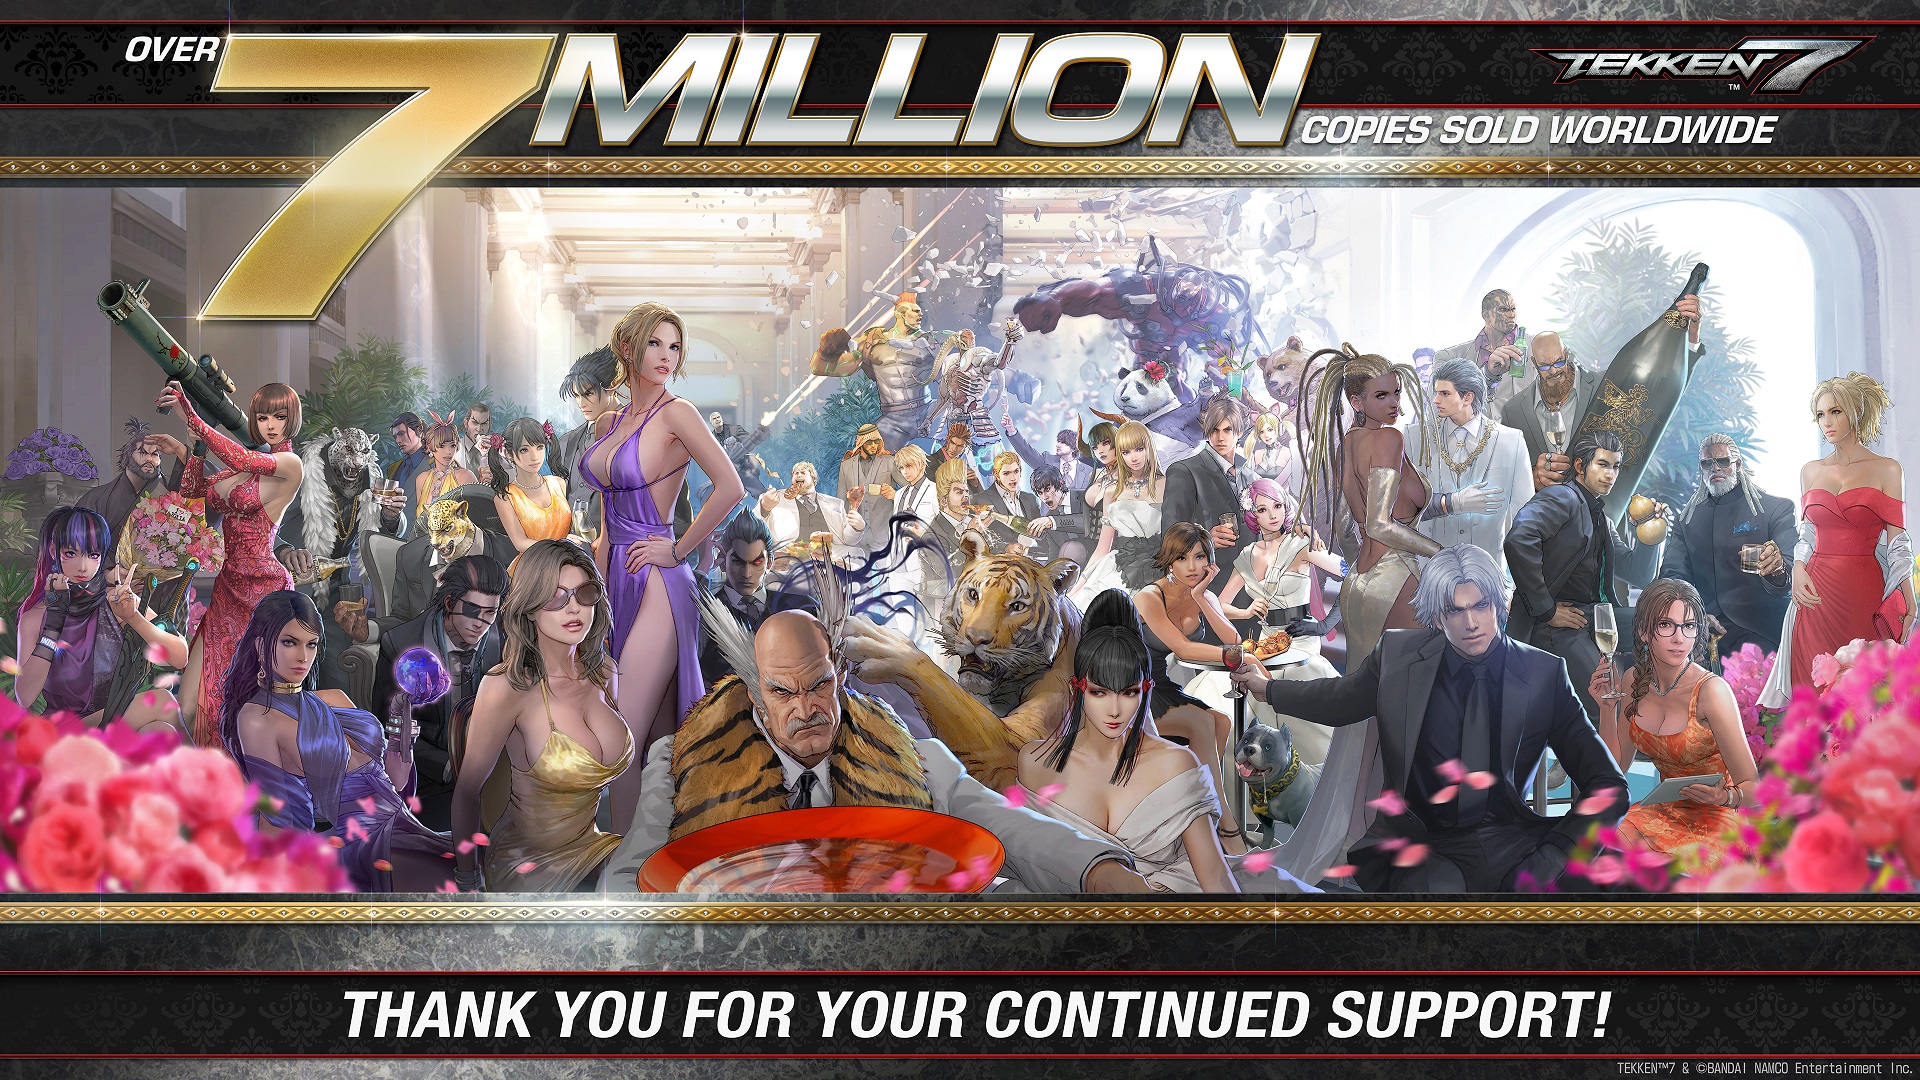 Tekken 7 Sales Top 7 Million